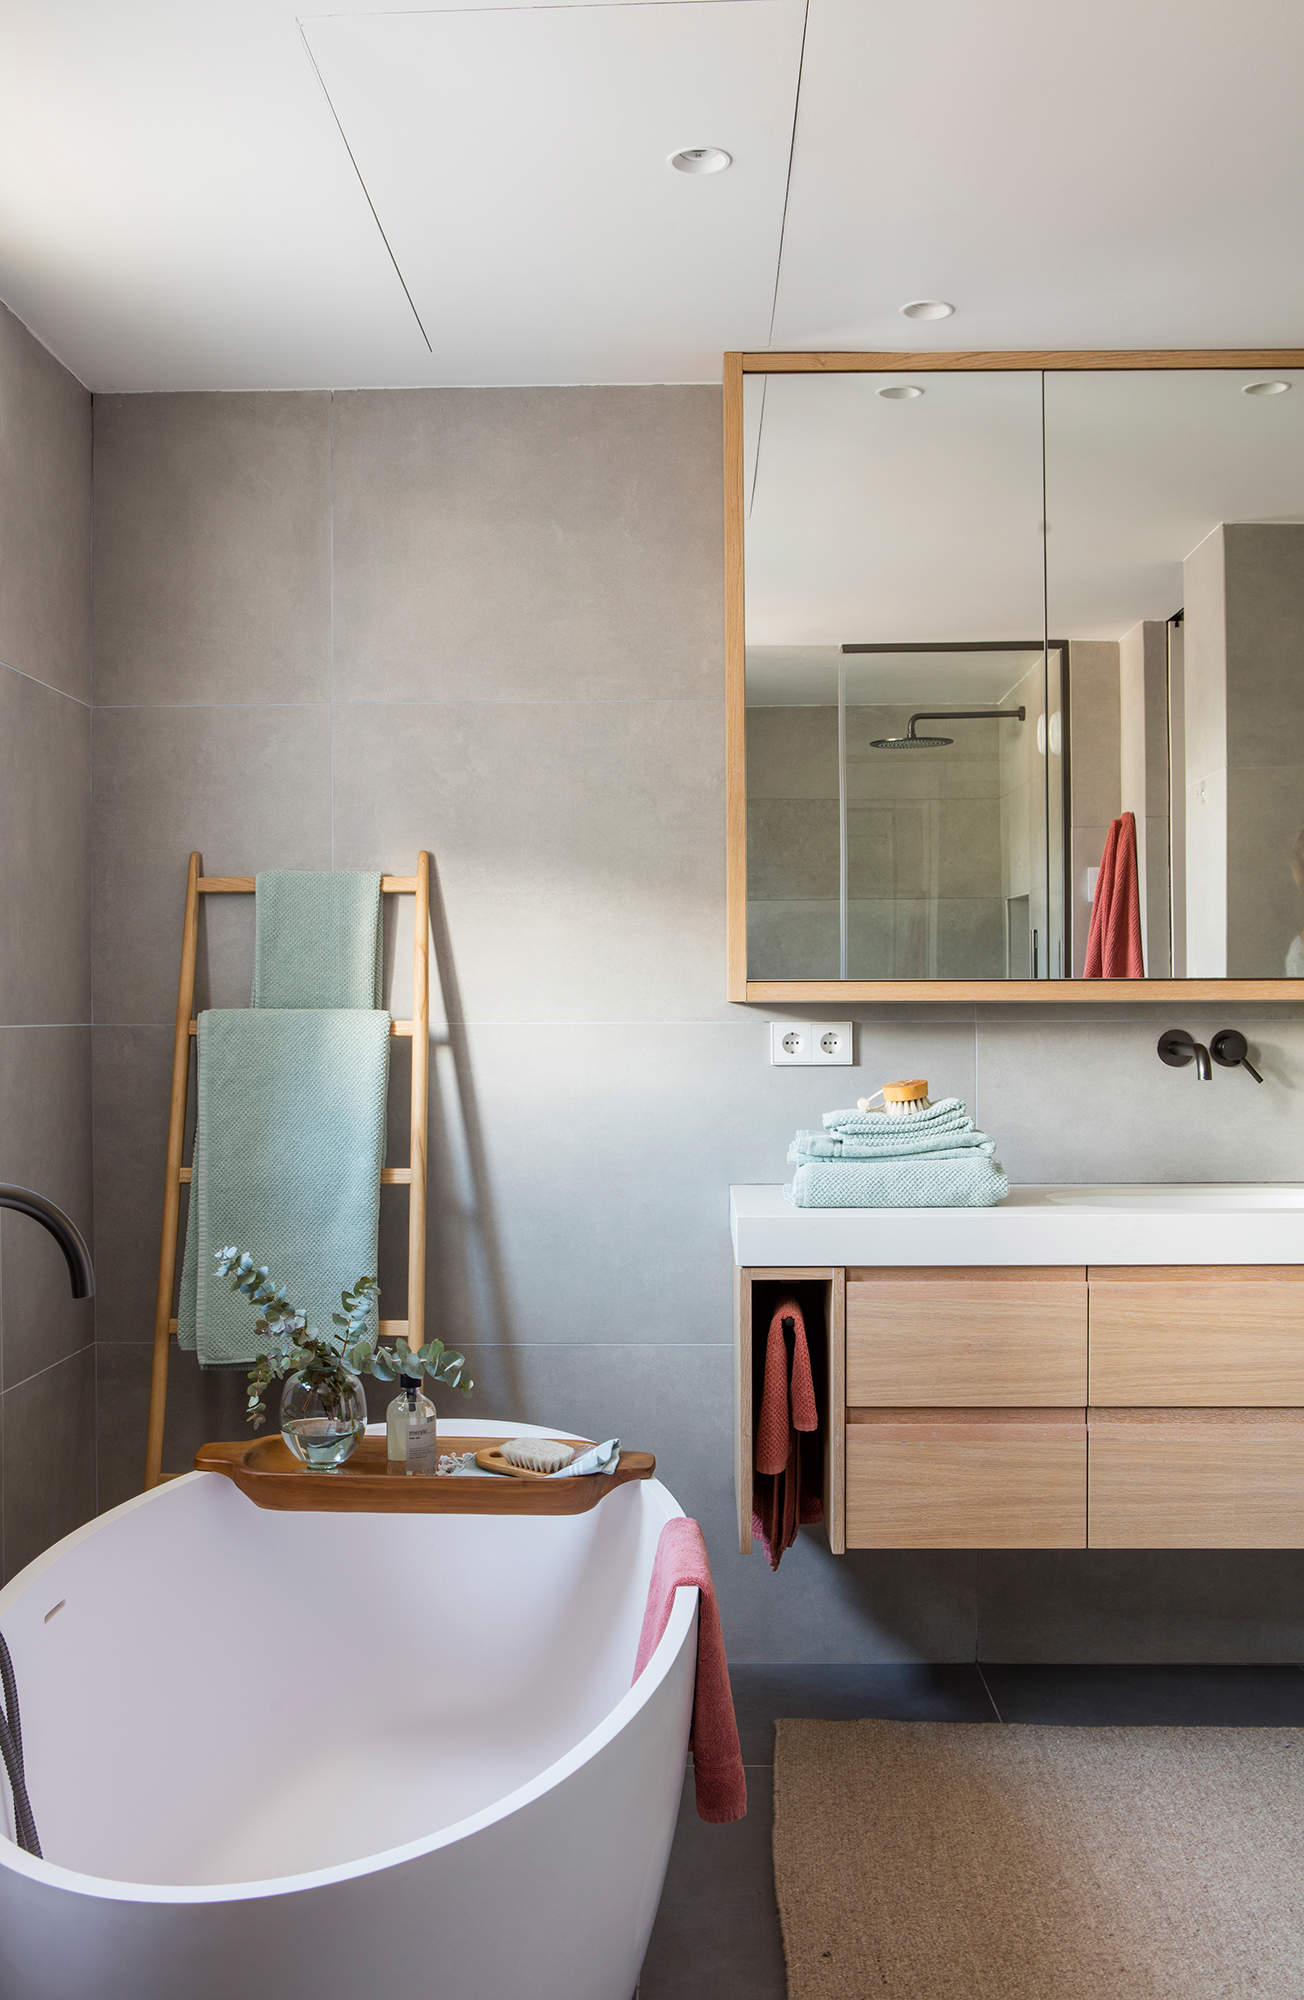 Cuarto de baño gris con muebles y complementos de madera clara.